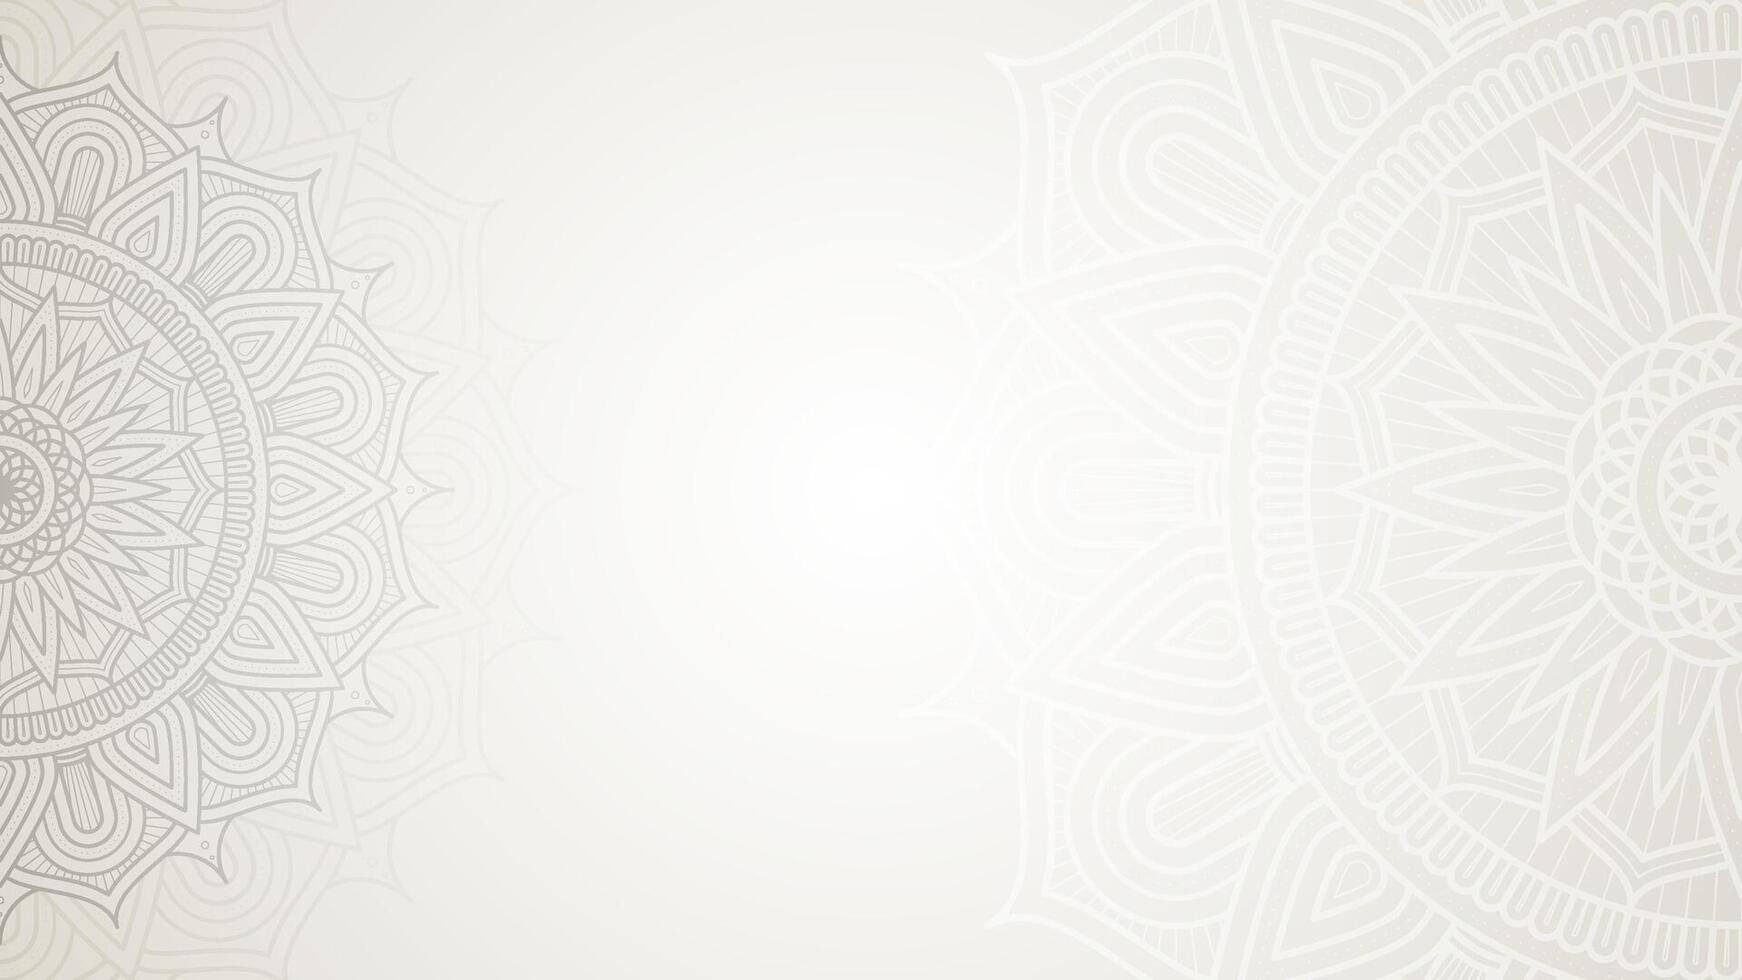 betoverend wit ingewikkeld bloemen Islamitisch mandala cirkels decoratie met blanco horizontaal vector achtergrond